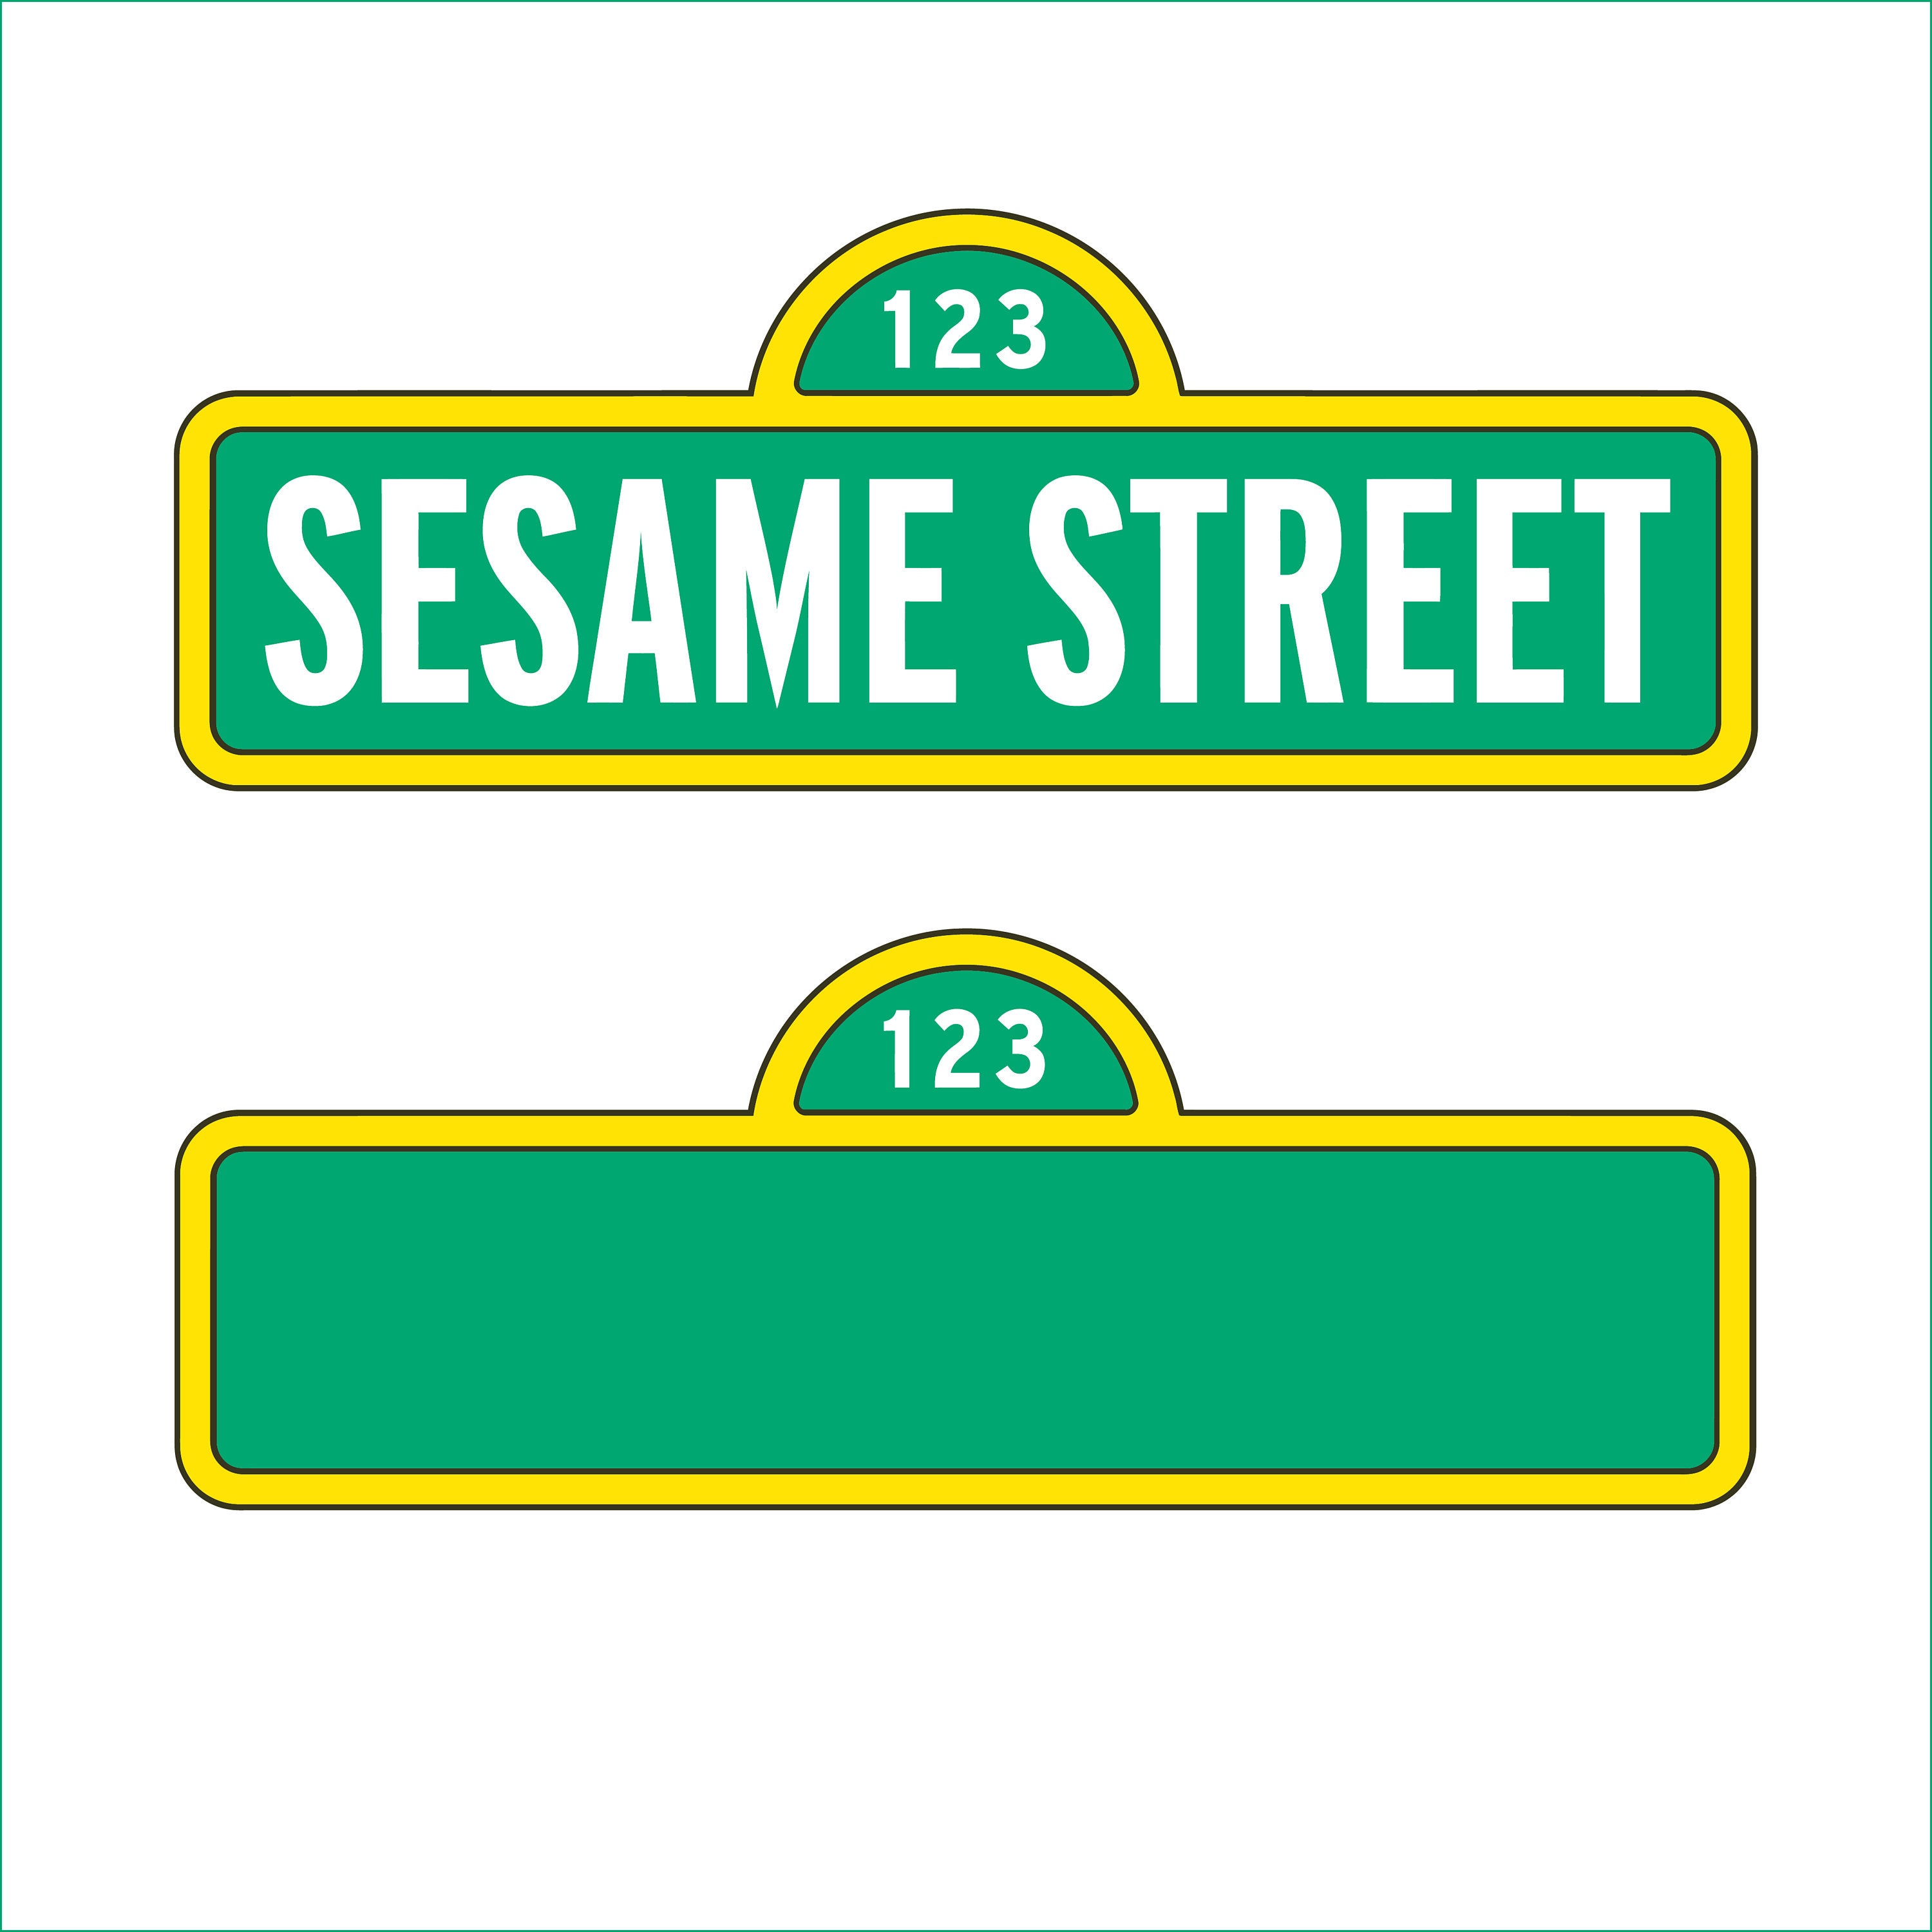 Sesame Street Street Sign Template